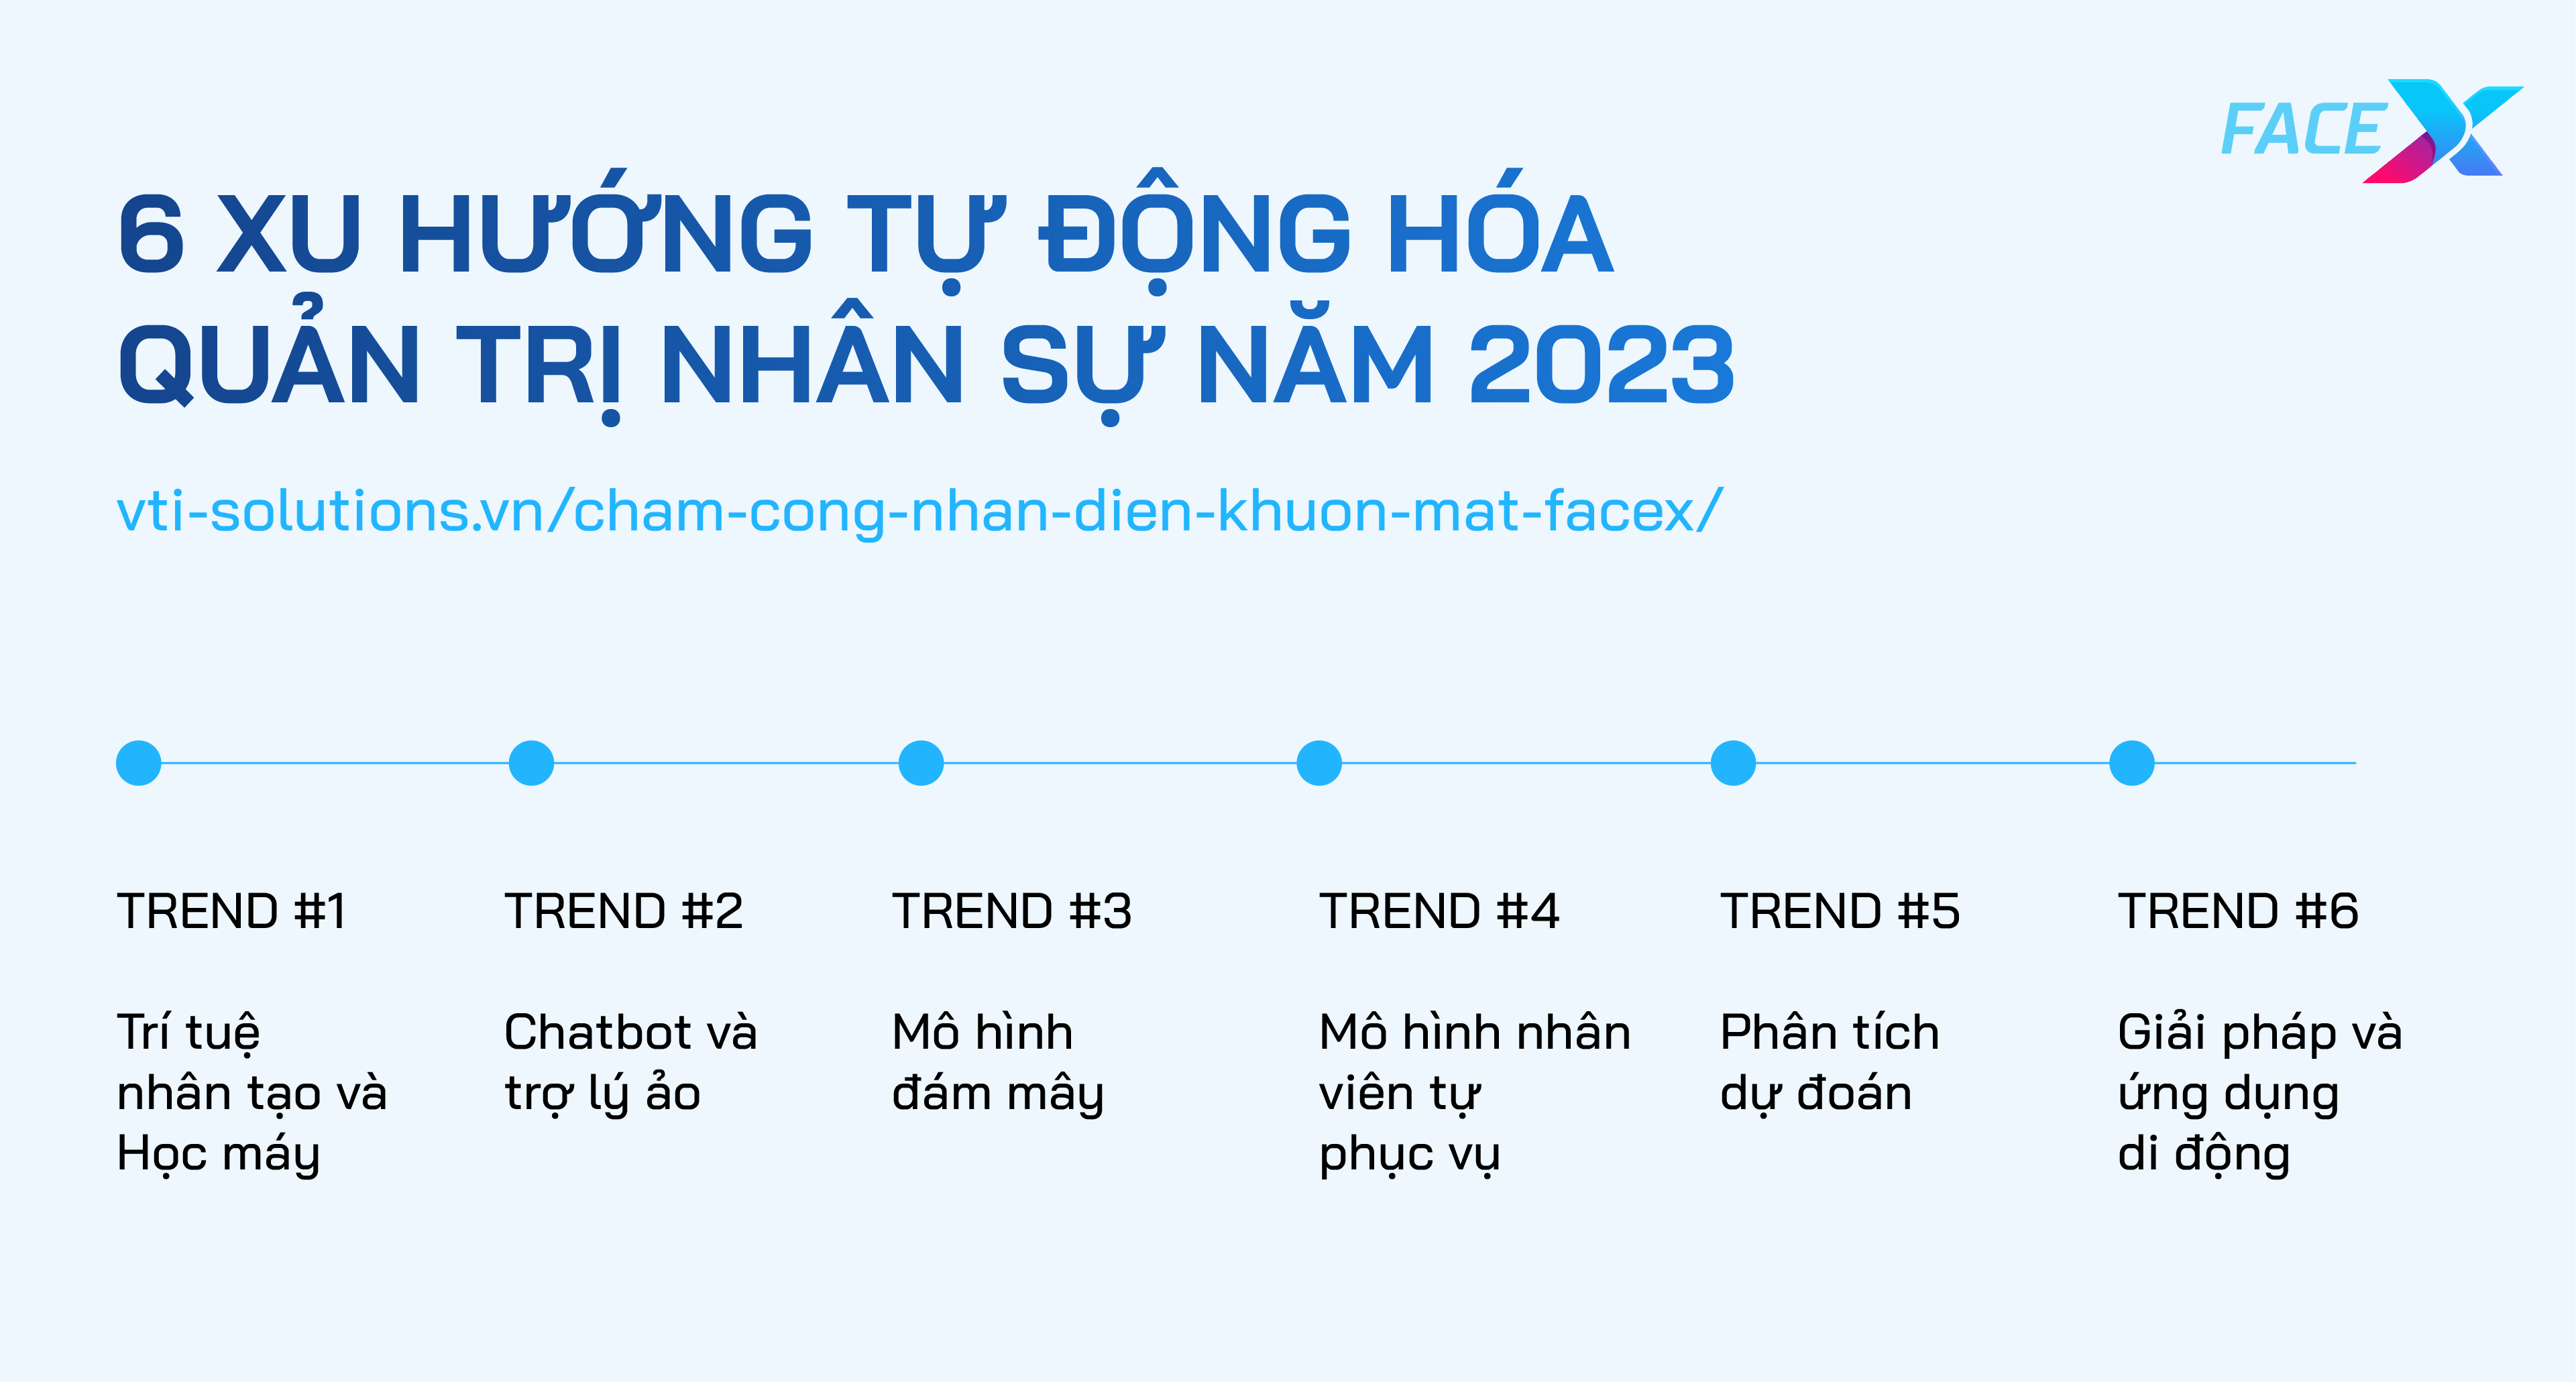 6-xu-huong-tu-dong-hoa-quan-tri-nhan-su-nam-2023-thoi-dai-cong-nghe-lay-con-nguoi-lam-trung-tam